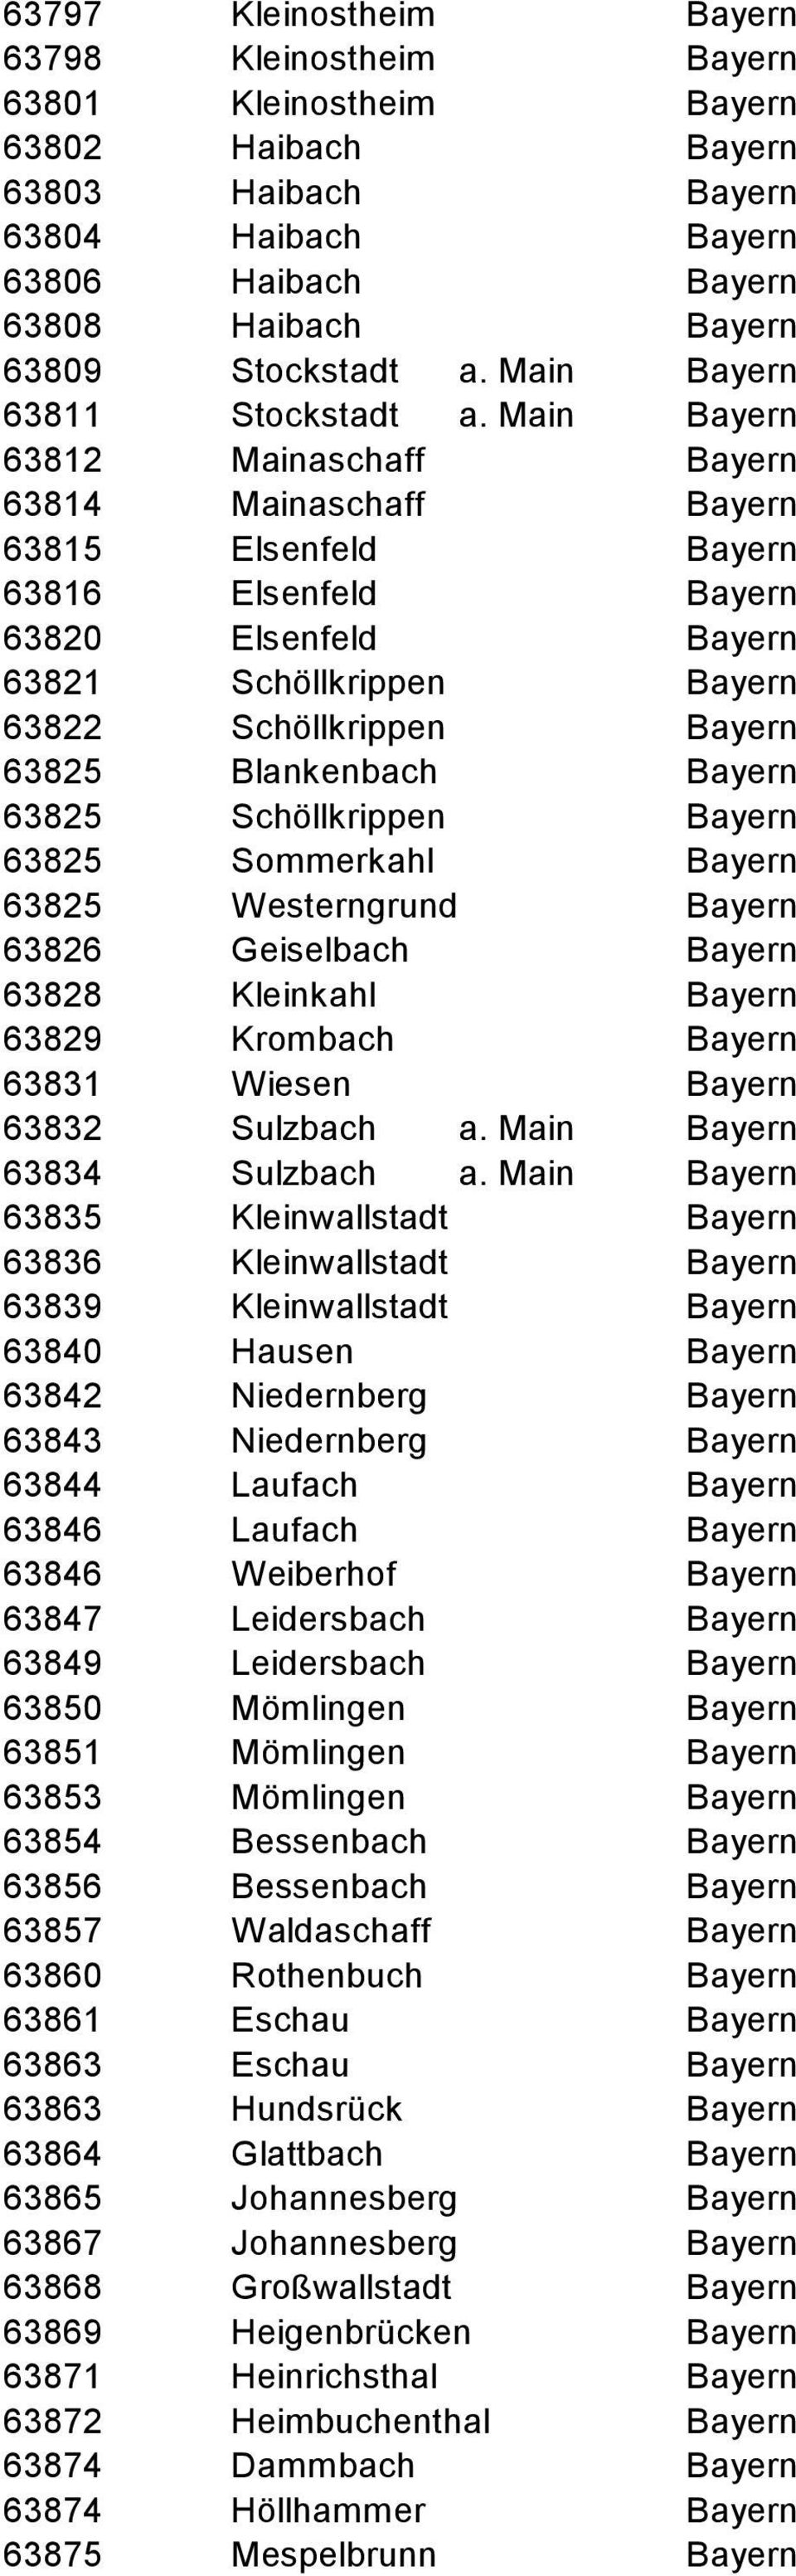 Main Bayern 63812 Mainaschaff Bayern 63814 Mainaschaff Bayern 63815 Elsenfeld Bayern 63816 Elsenfeld Bayern 63820 Elsenfeld Bayern 63821 Schöllkrippen Bayern 63822 Schöllkrippen Bayern 63825